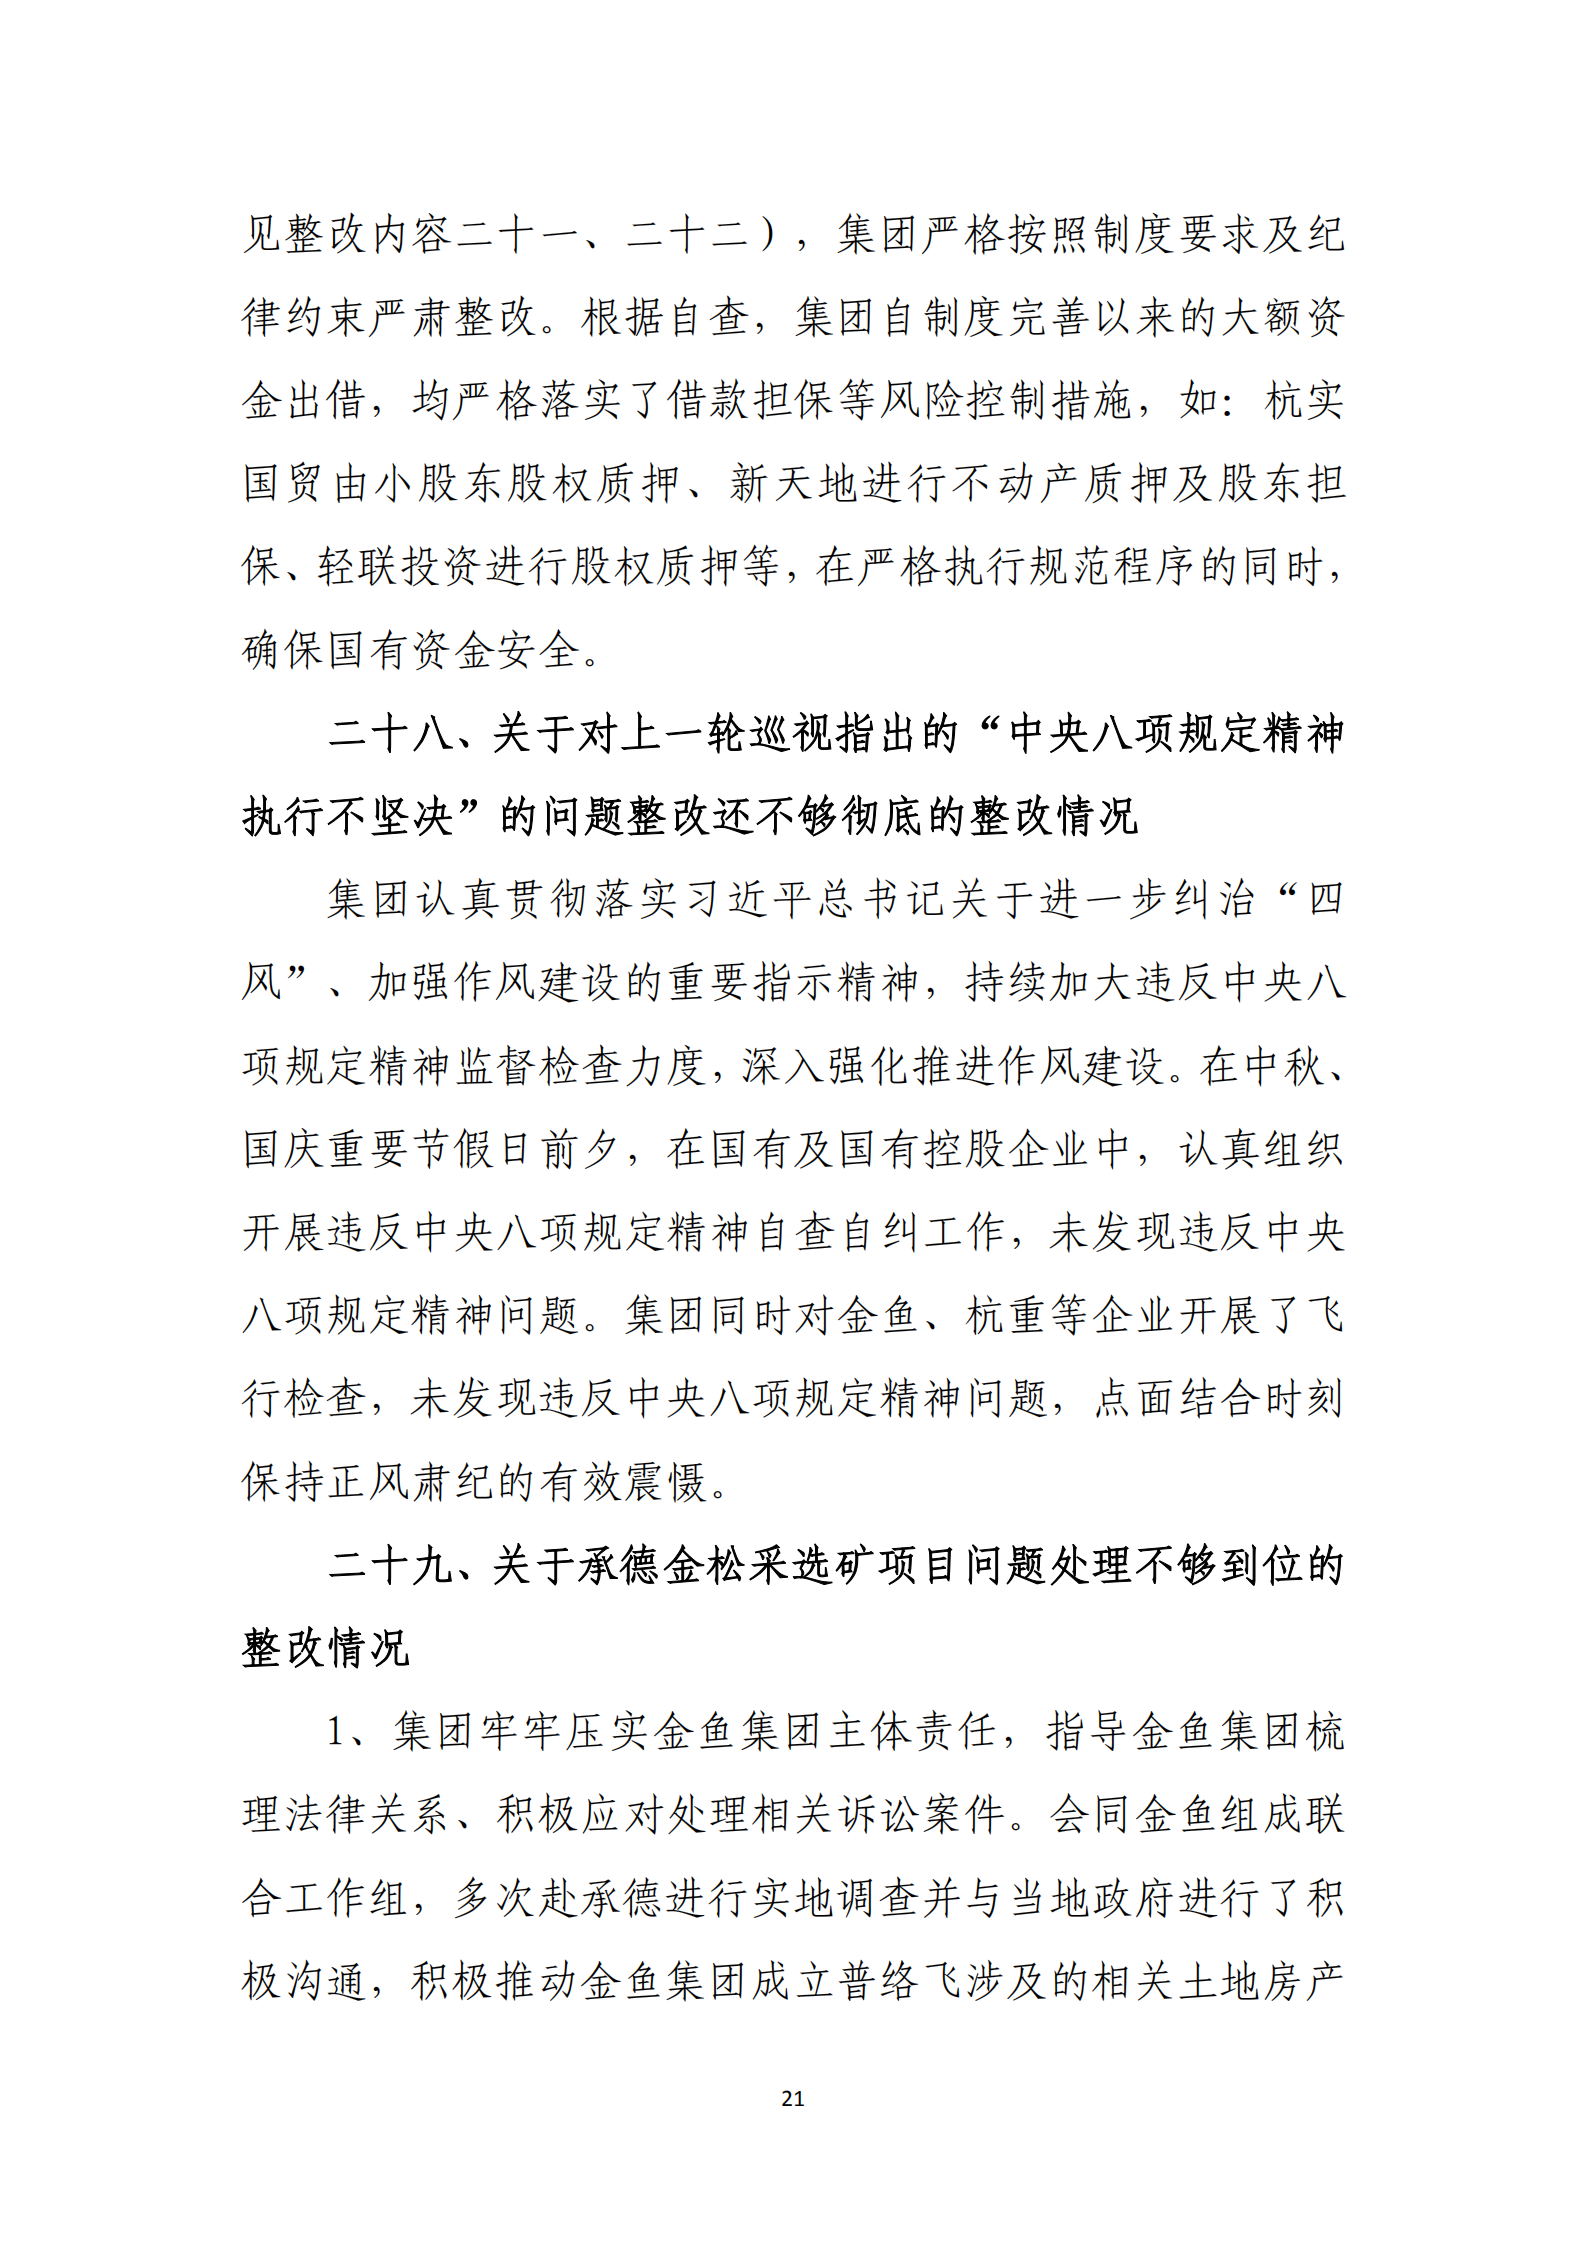 杭实集团党委关于巡察整改情况的通报_20.png